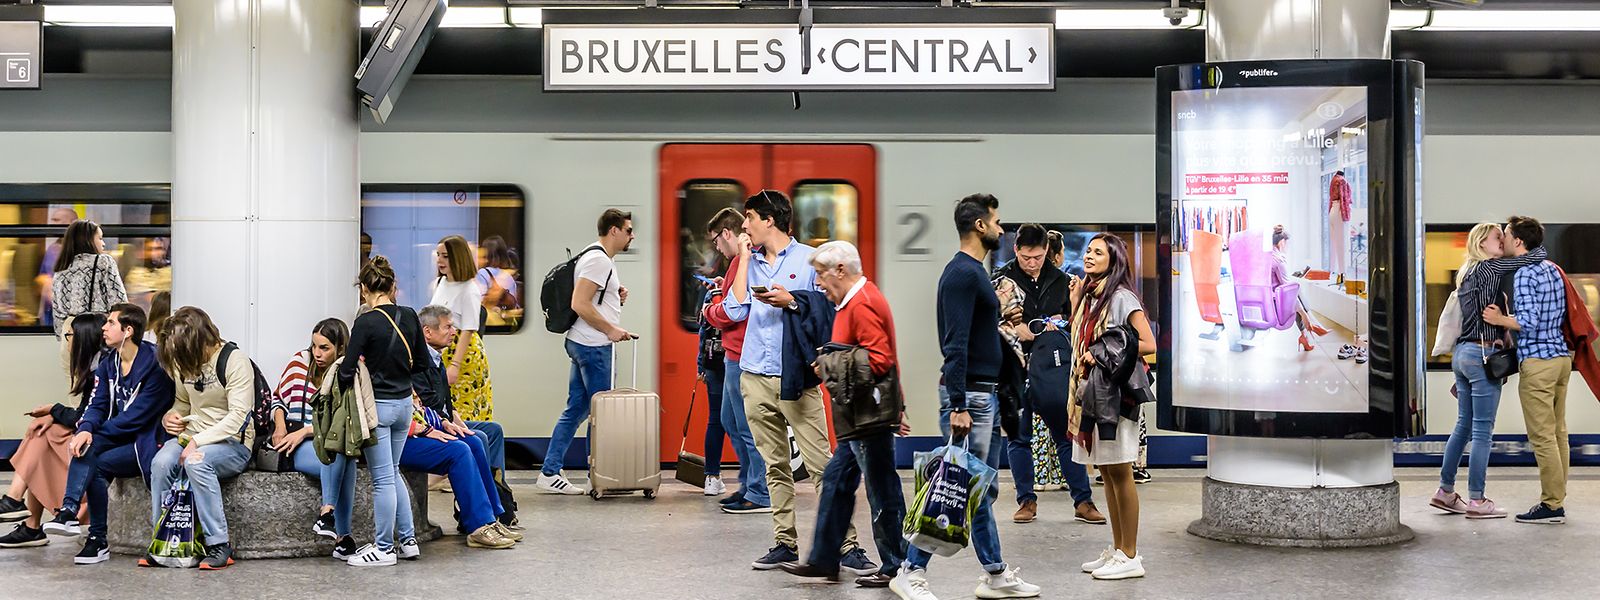 Auch in der internationalen Metropole Brüssel scheinen sich die Ausländer wenig für die Lokalwahlen zu interessieren.